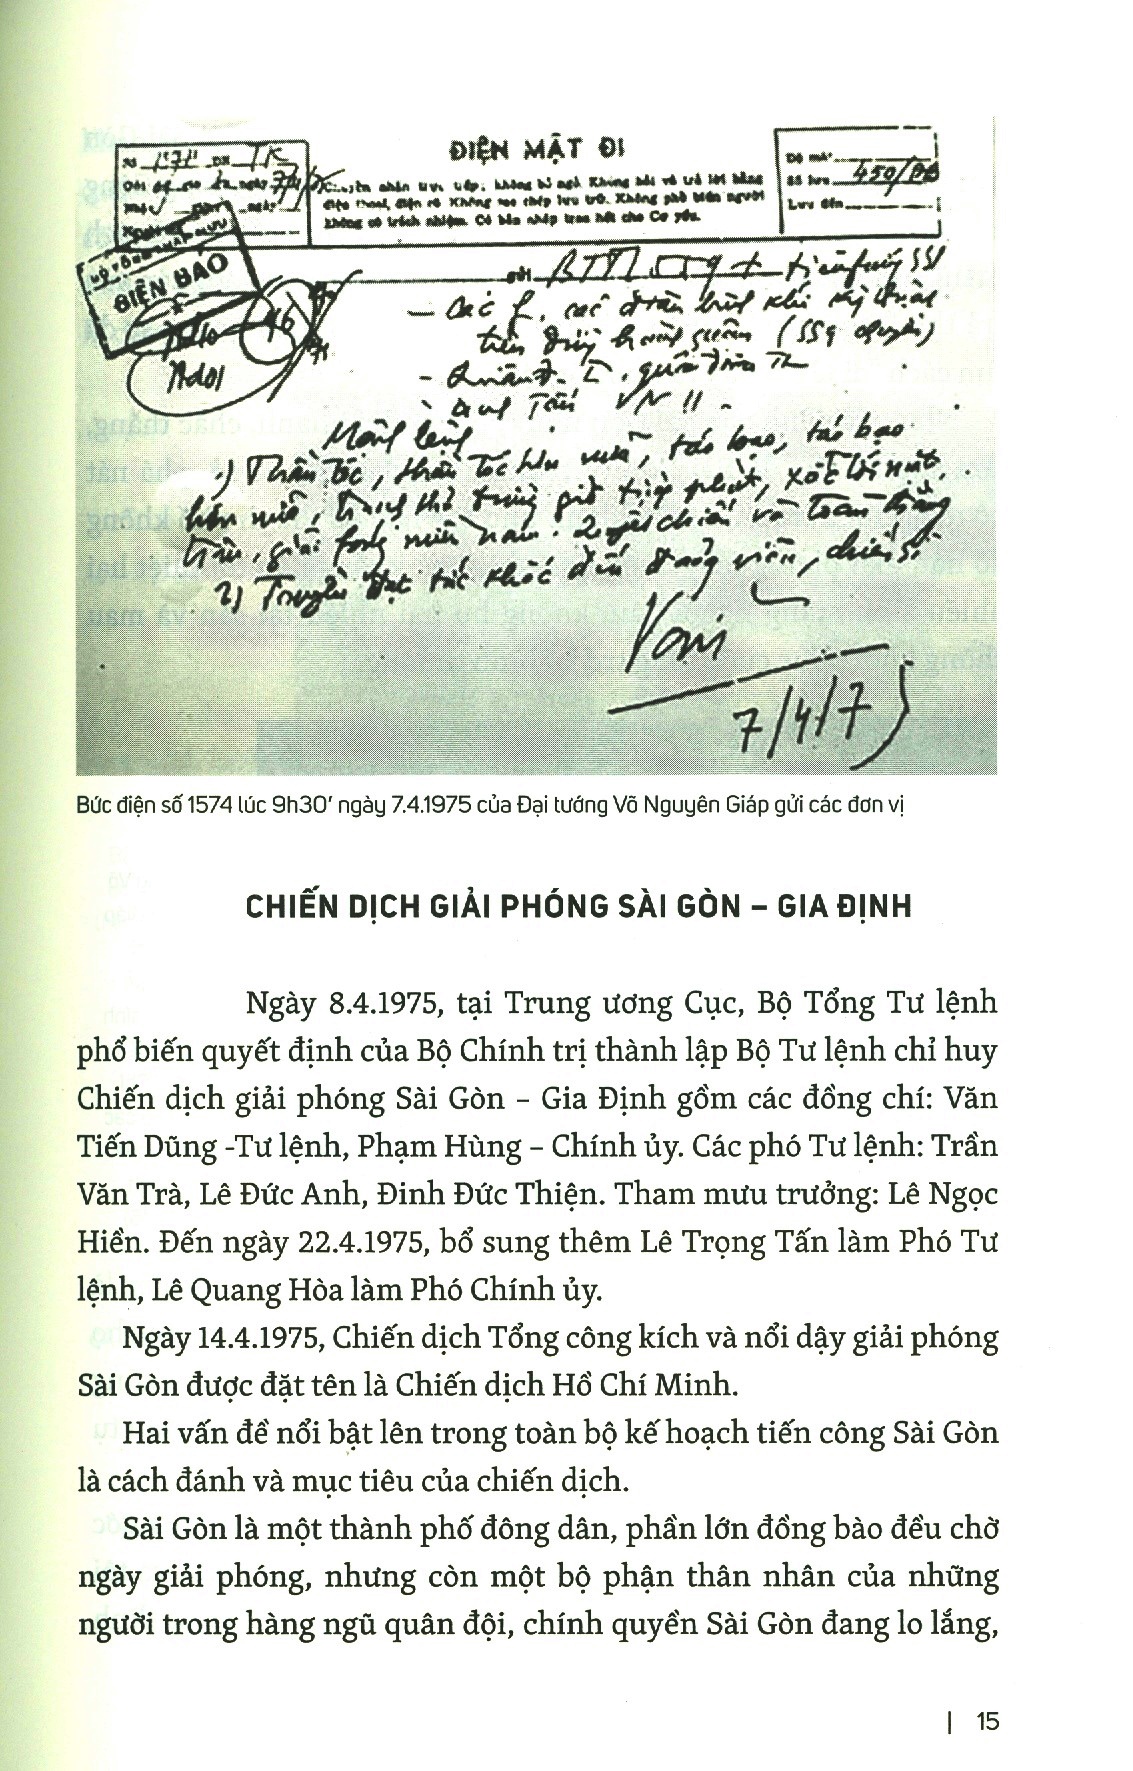 Thành Đoàn Cùng Quân Và Dân Sài Gòn - Gia Định Tham Gia Chiến Dịch Hồ Chí Minh PDF